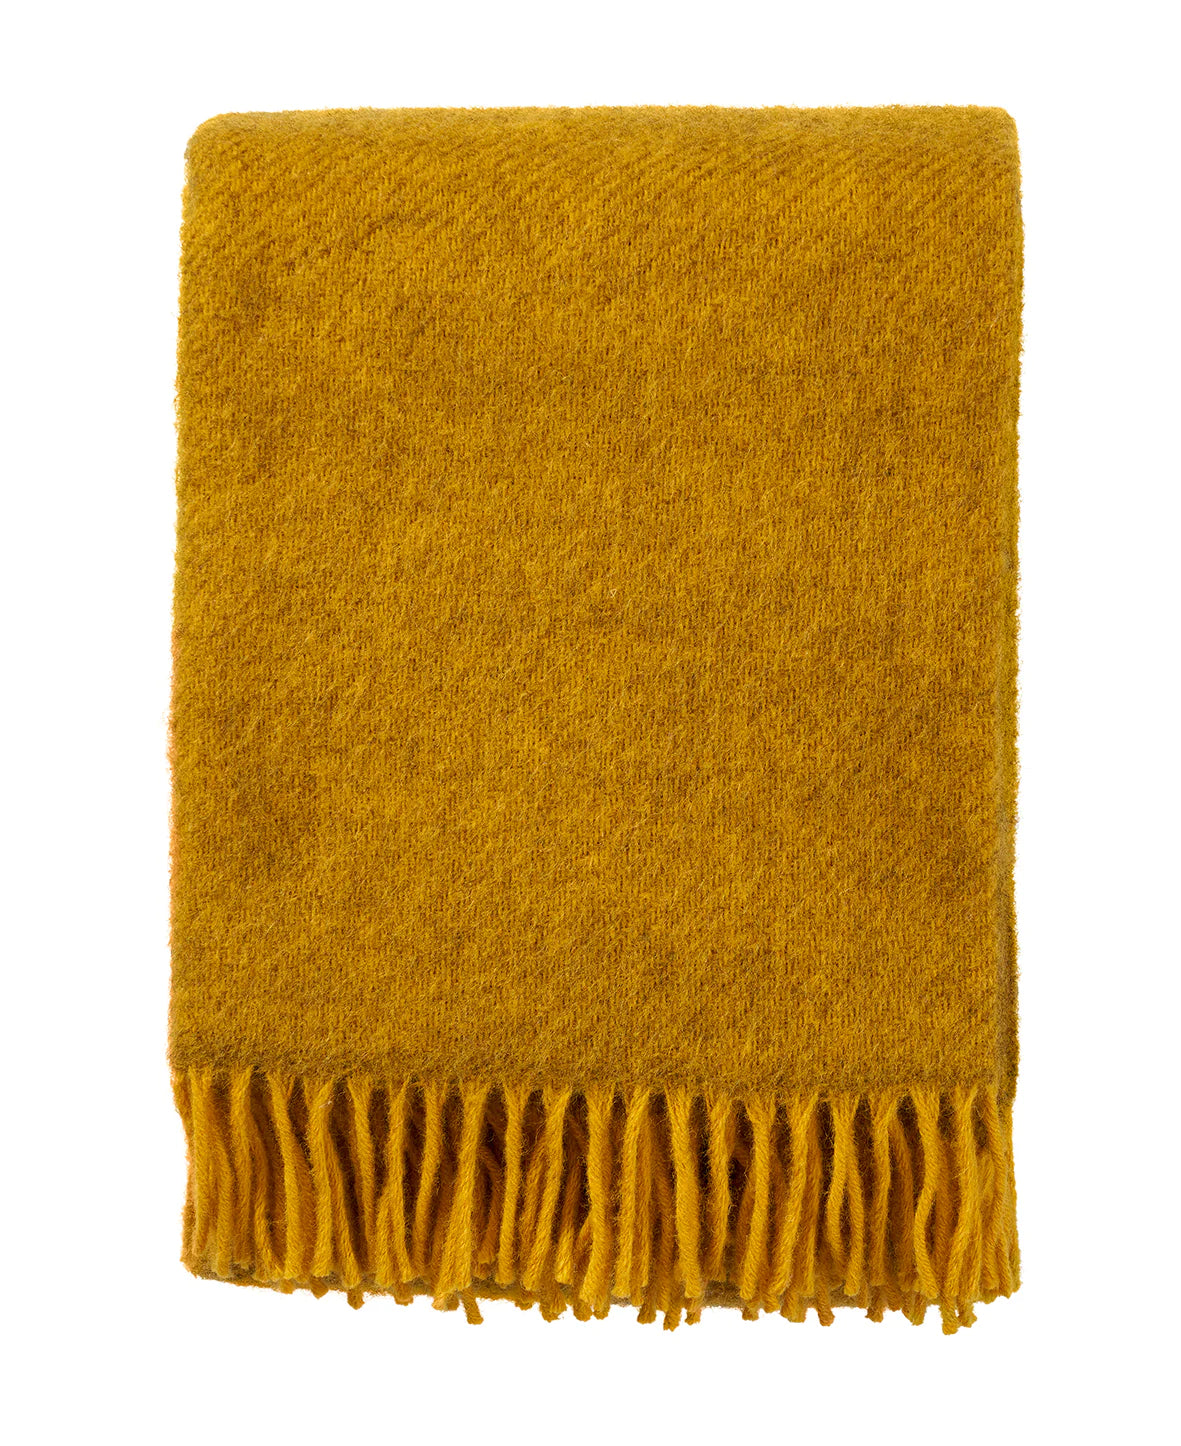 Klippan Gotland Throw Blanket - Yellow